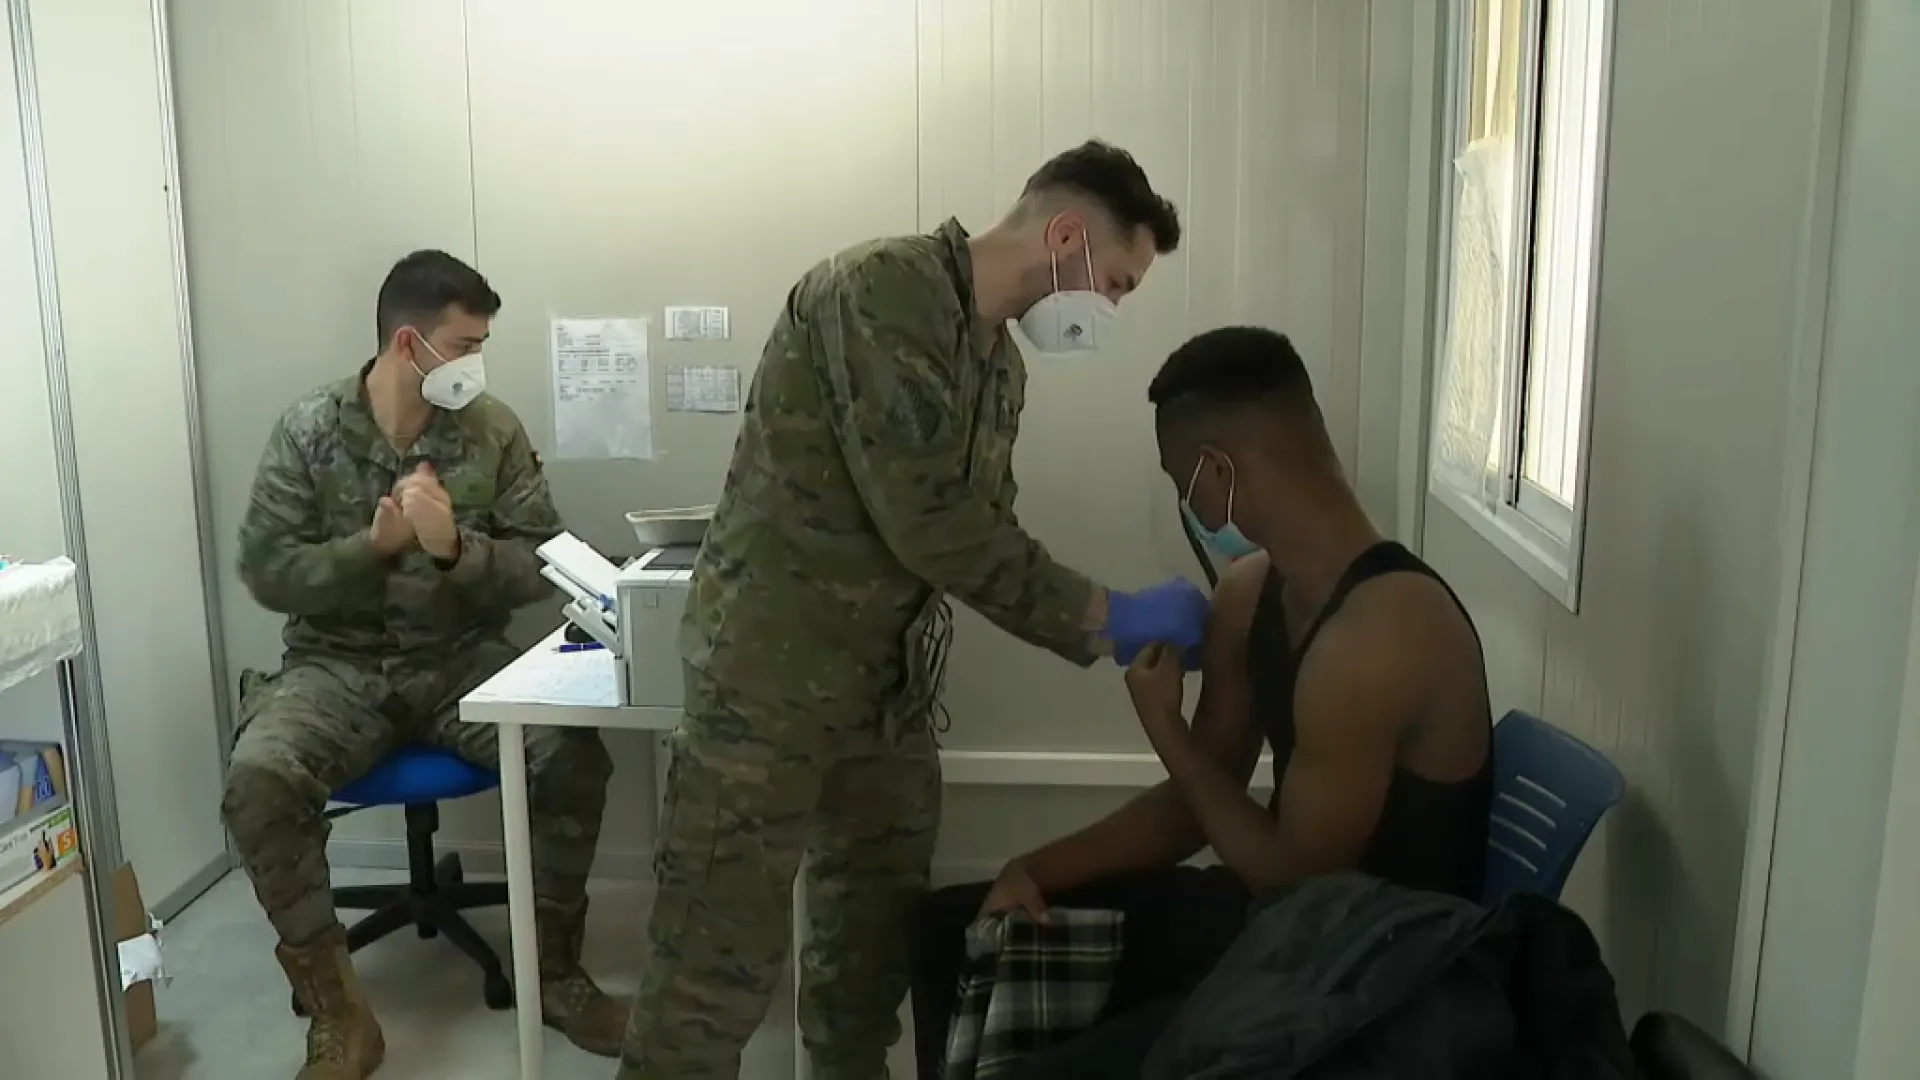 Els militars ja han vacunat a més de 200.000 persones des del desembre